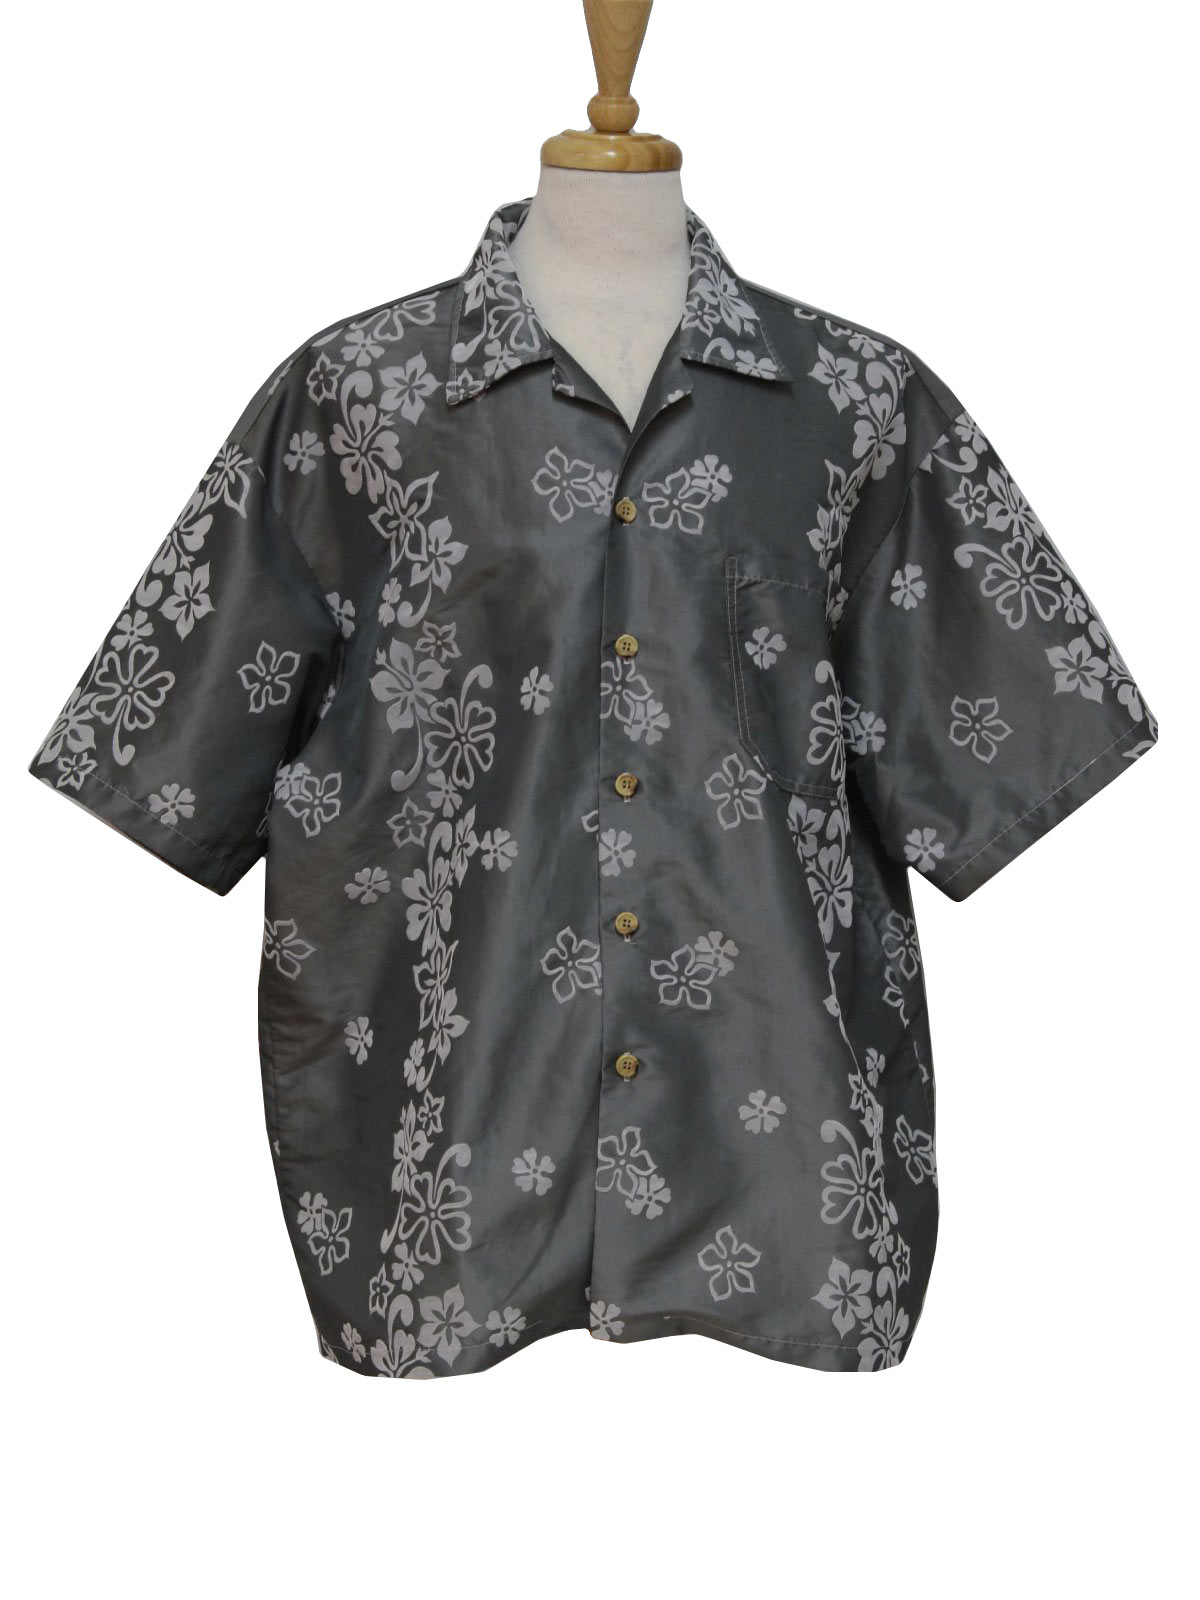 Retro 1990's Hawaiian Shirt (Tapa Threads) : 90s -Tapa Threads- Mens ...